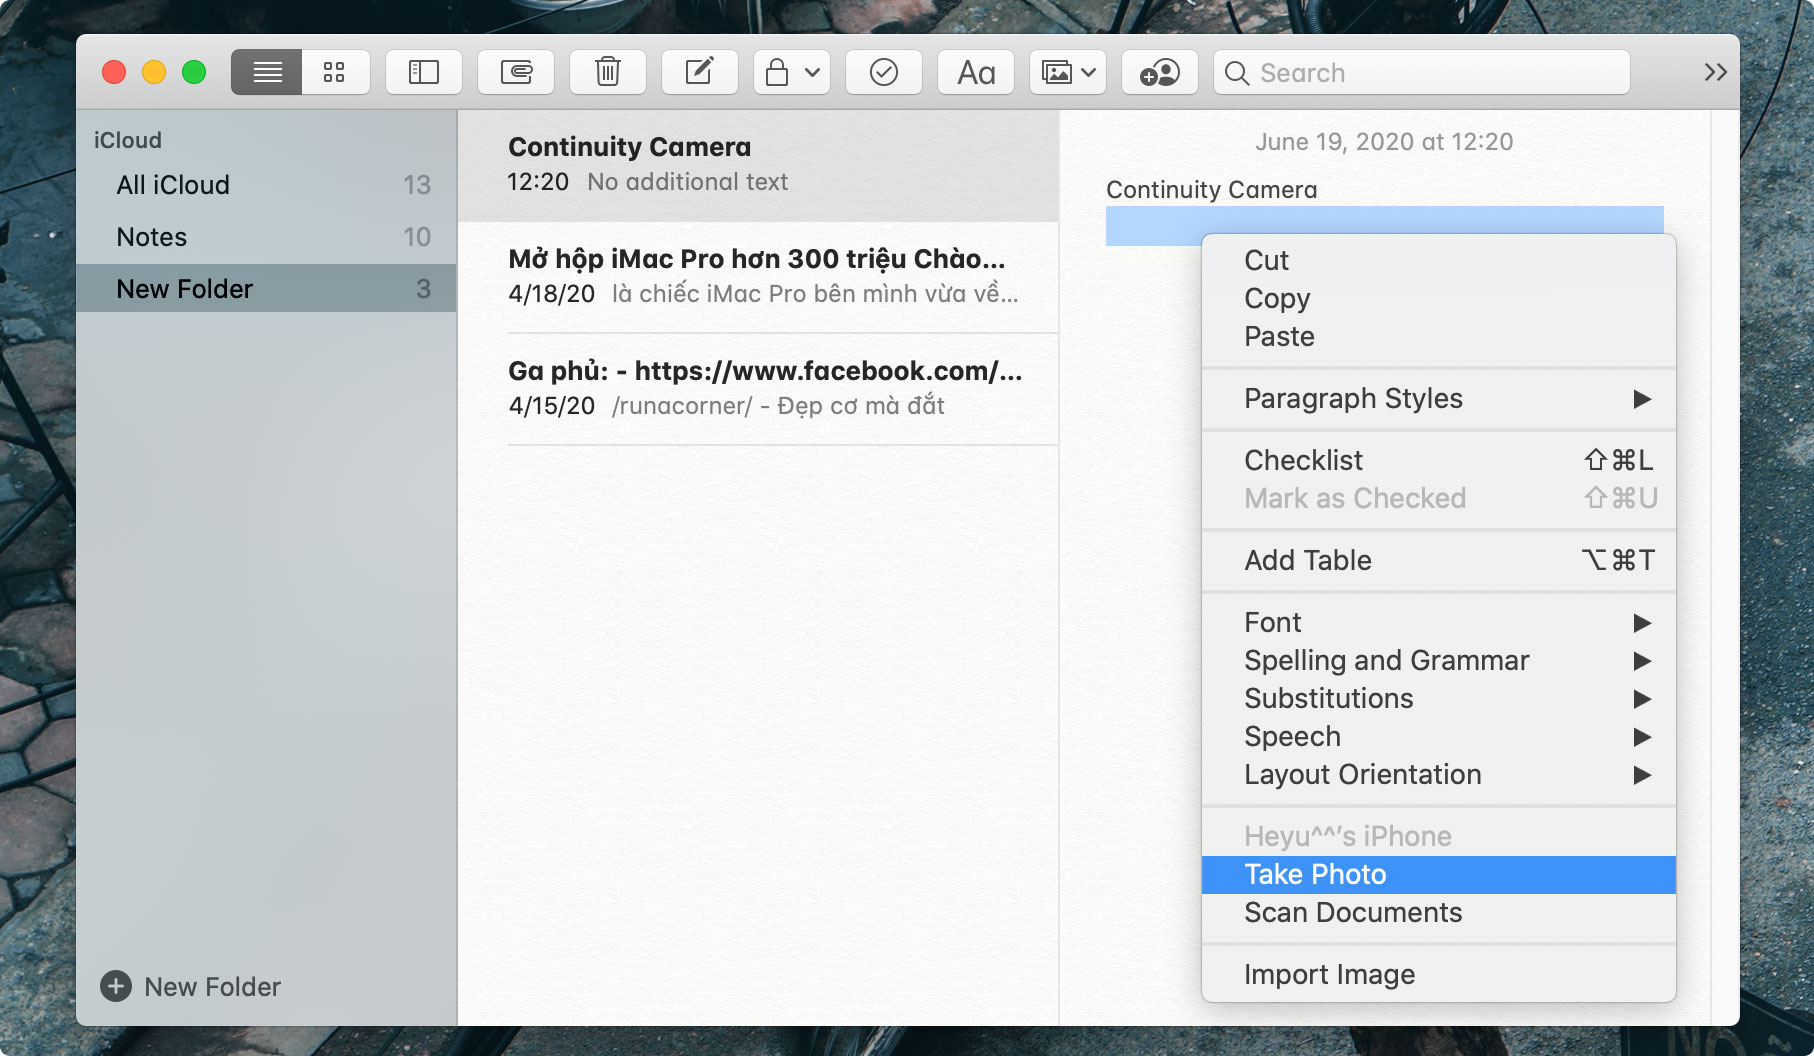 Cách thêm ảnh và scan tài liệu bằng iPhone/iPad với tính năng Continuity Camera